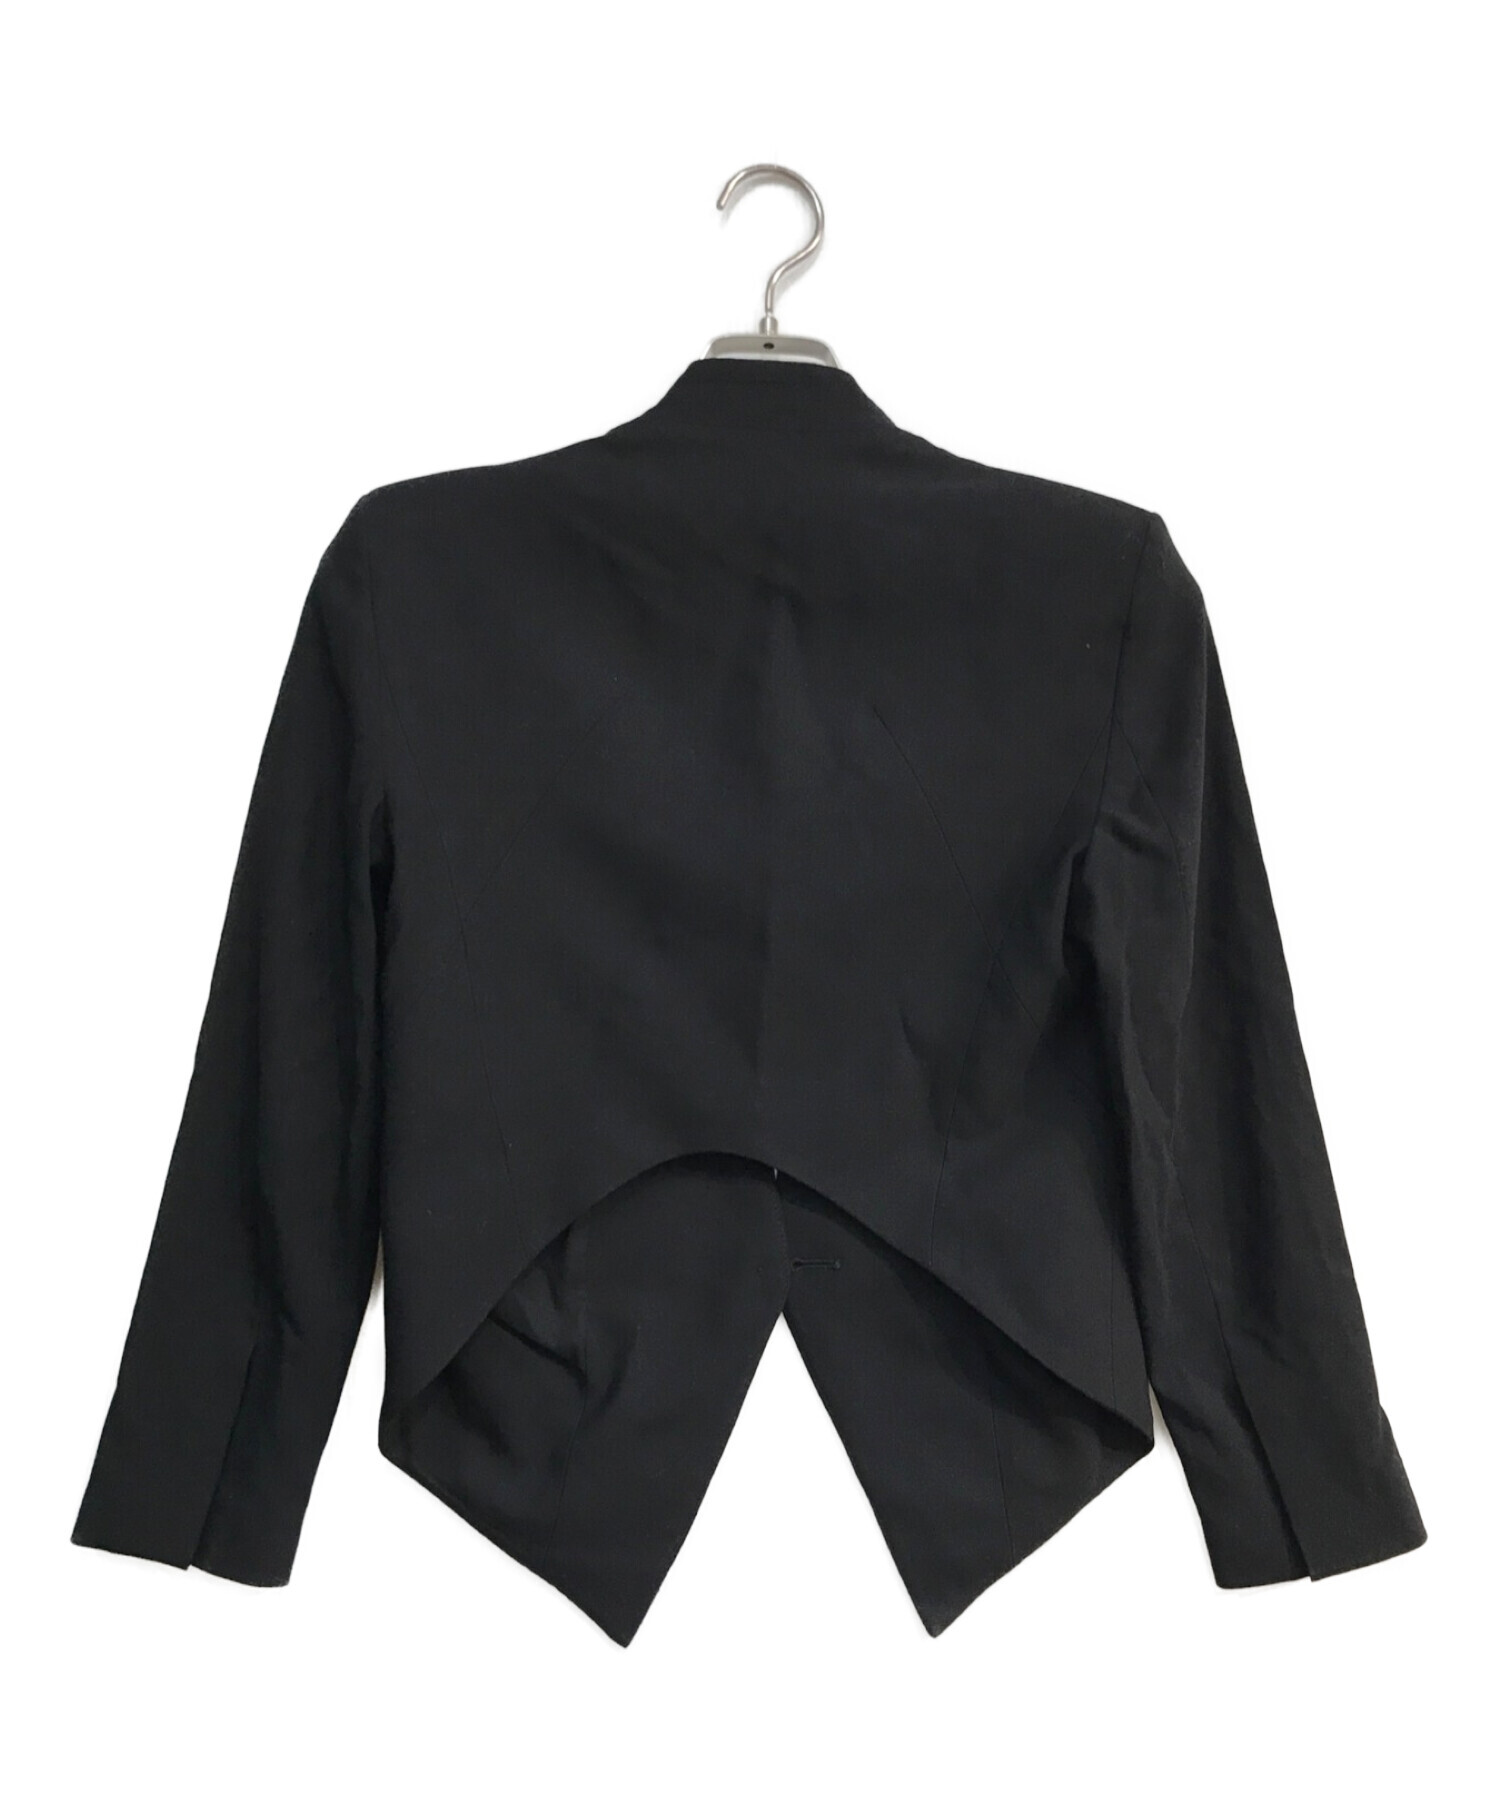 HELMUT LANG (ヘルムートラング) デザインジャケット ブラック